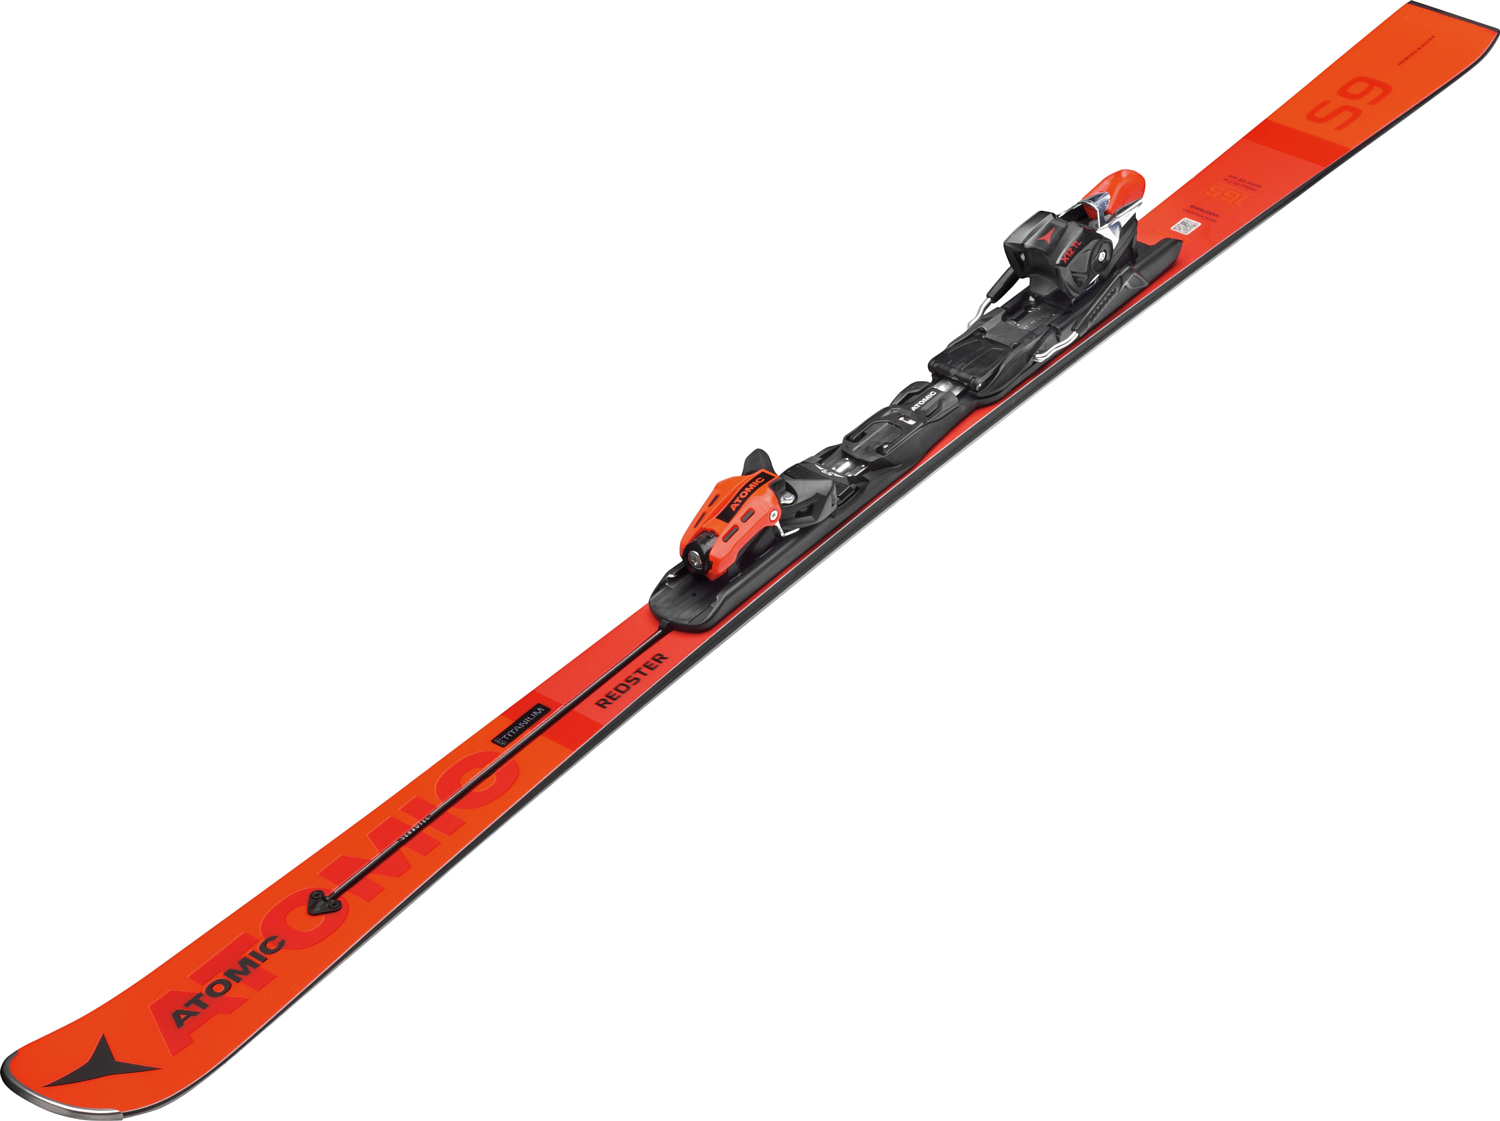 Горные лыжи с креплениями ATOMIC 2019-20 Redster S9 FIS J + X 14 TL RS Red